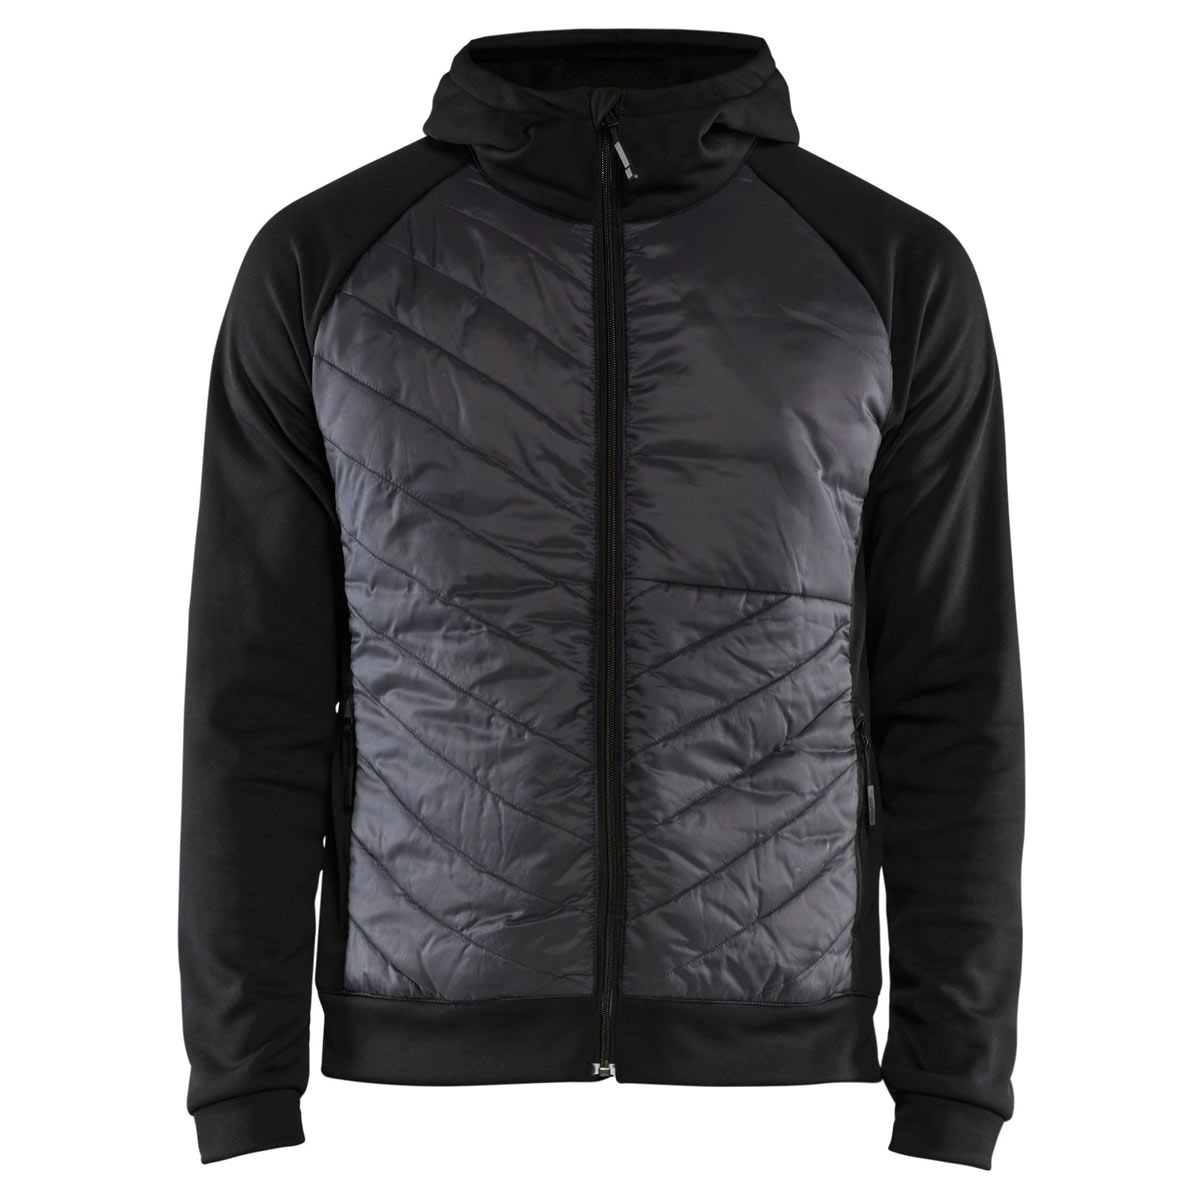 Blakläder hybrid sweat jacket with hood